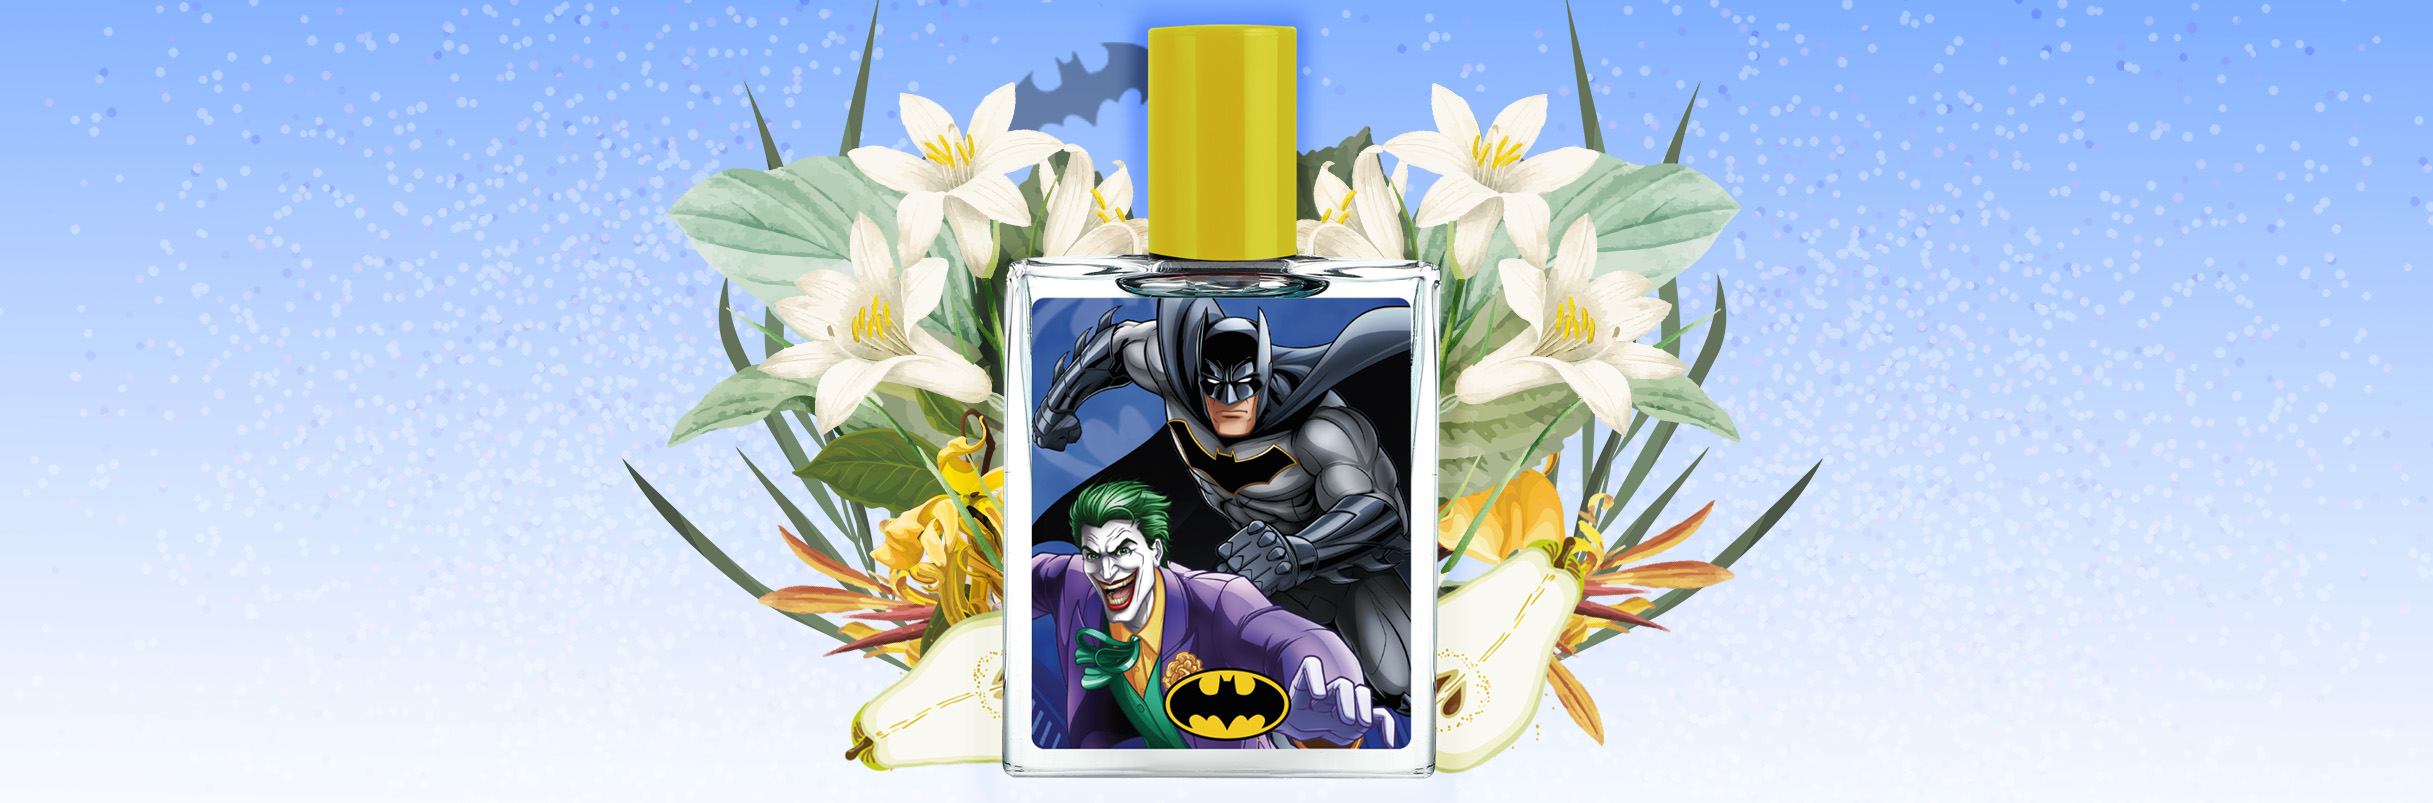 The Batman & Joker fragrances